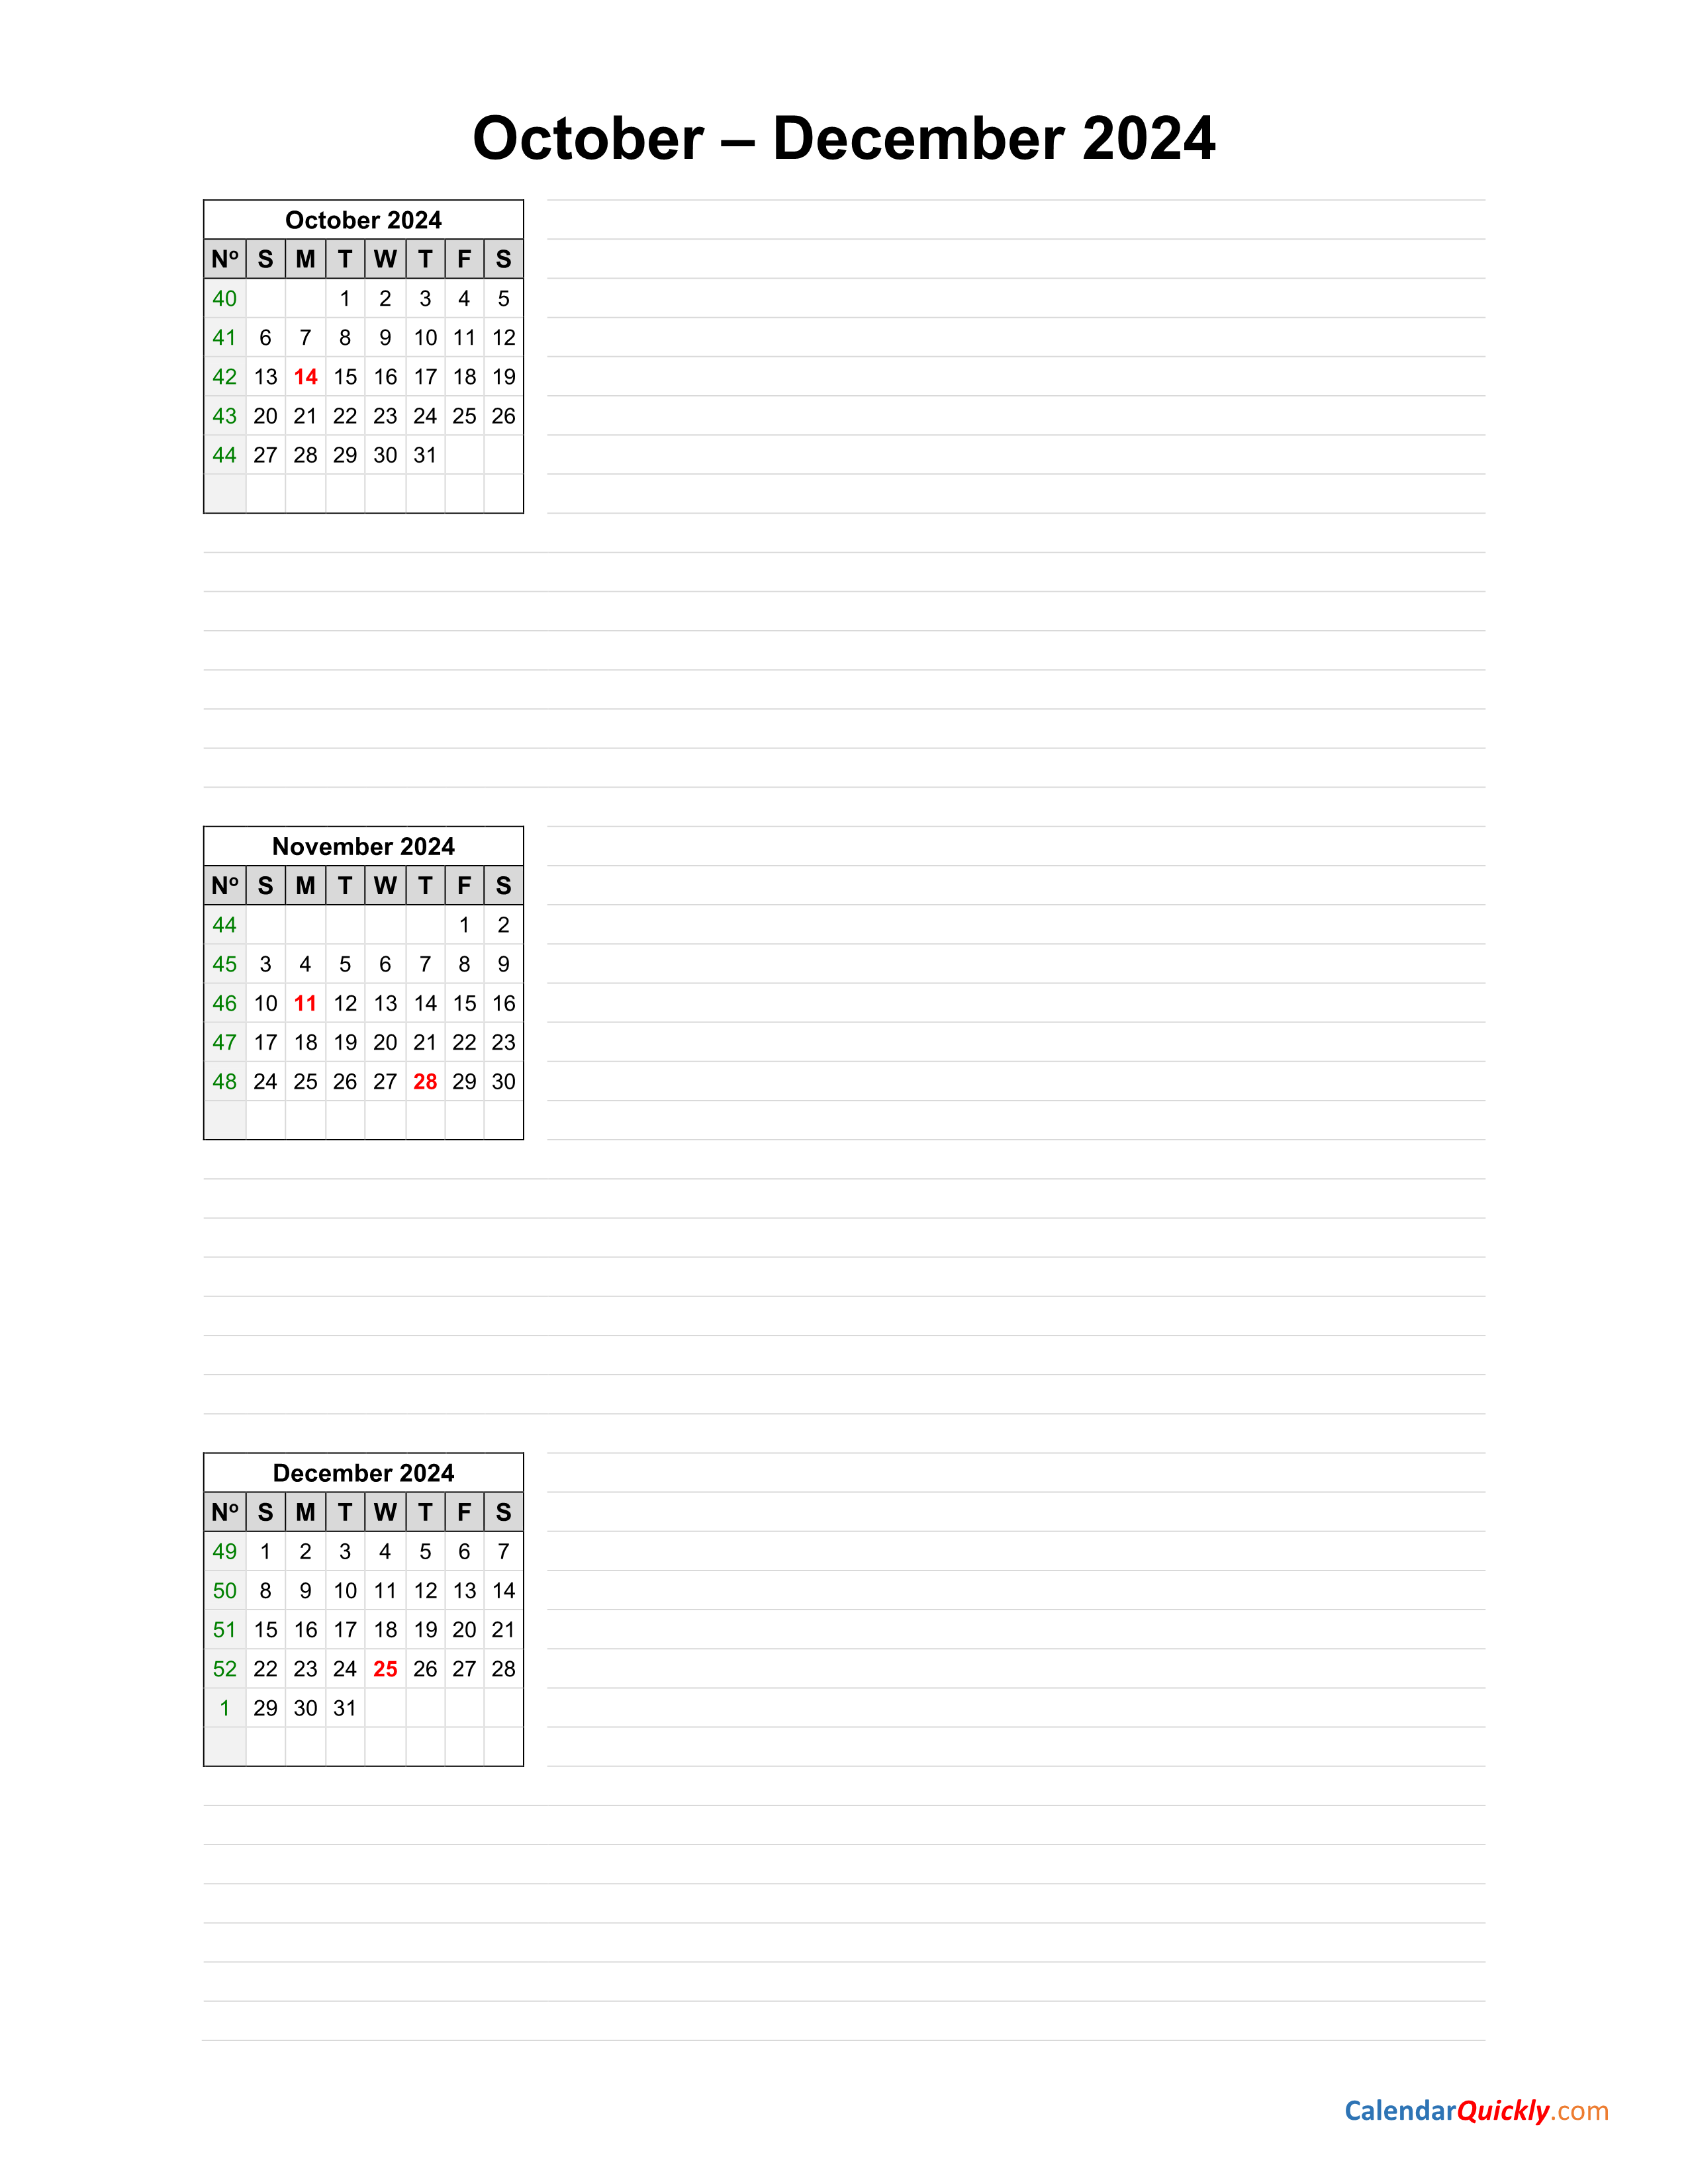 Calendar October To December 2024 Calendar 2024 Ireland Printable